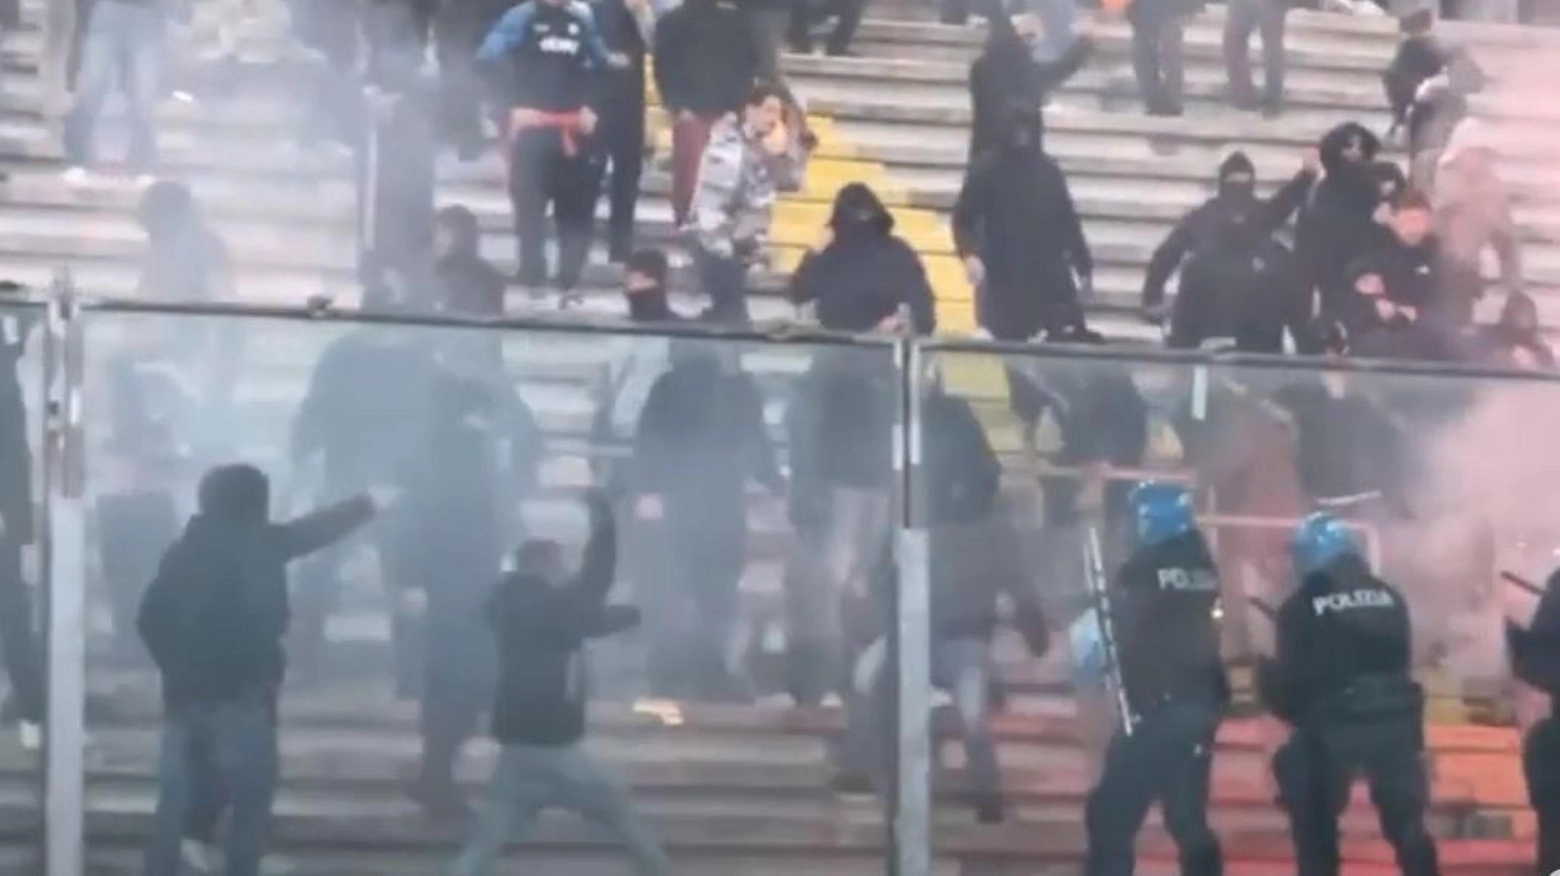 Alcuni ultras catanesi ha fatto irruzione nella tribuna occupata dai biancoscudati: cariche della polizia per riportare l’ordine